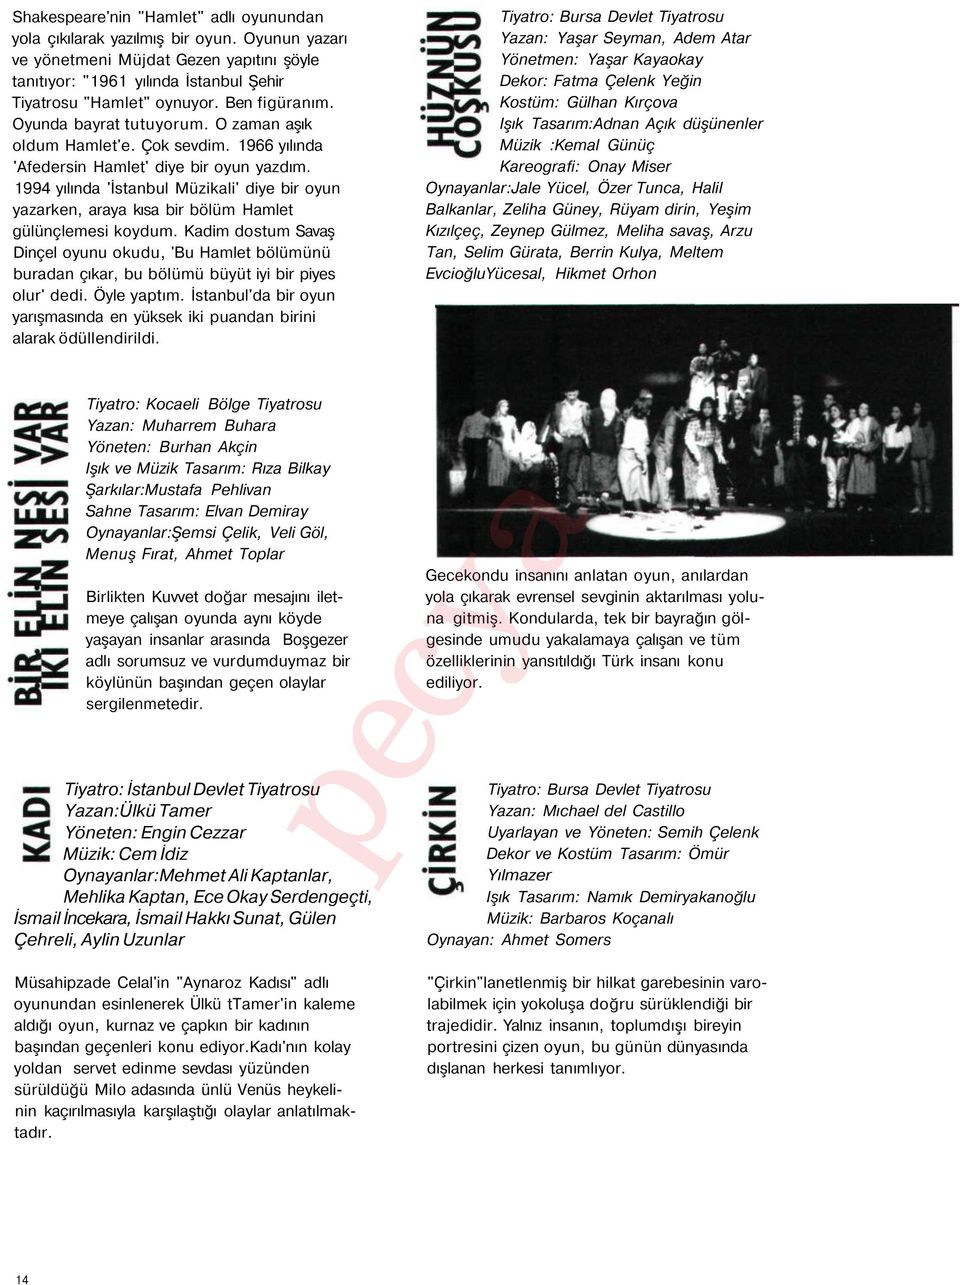 1994 yılında 'İstanbul Müzikali' diye bir oyun yazarken, araya kısa bir bölüm Hamlet gülünçlemesi koydum.